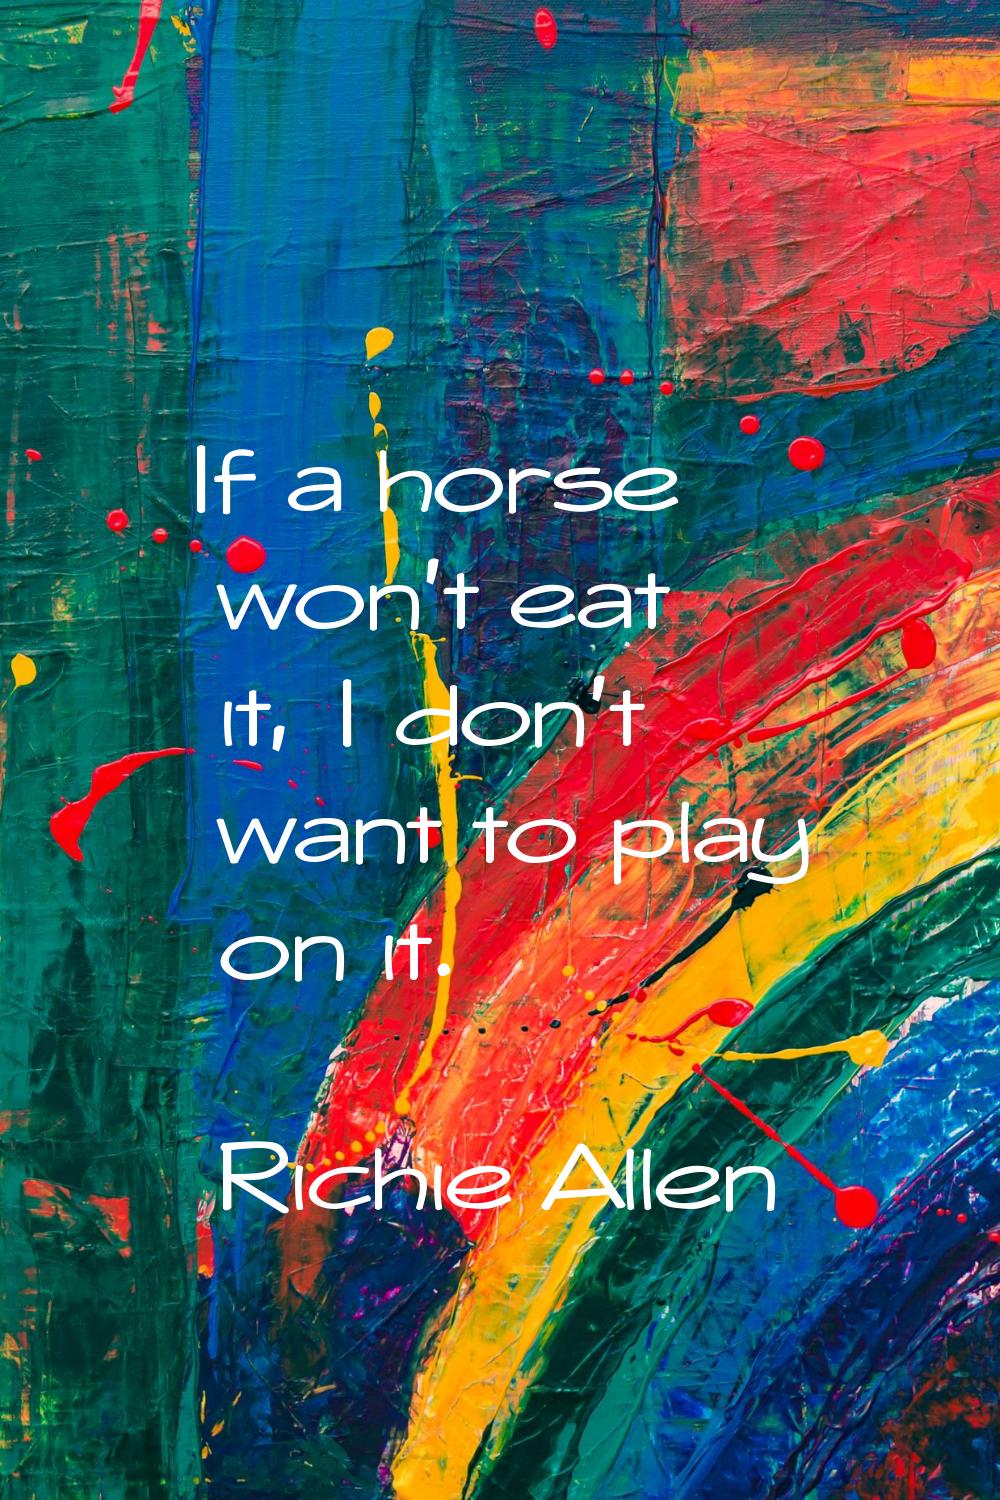 If a horse won't eat it, I don't want to play on it.